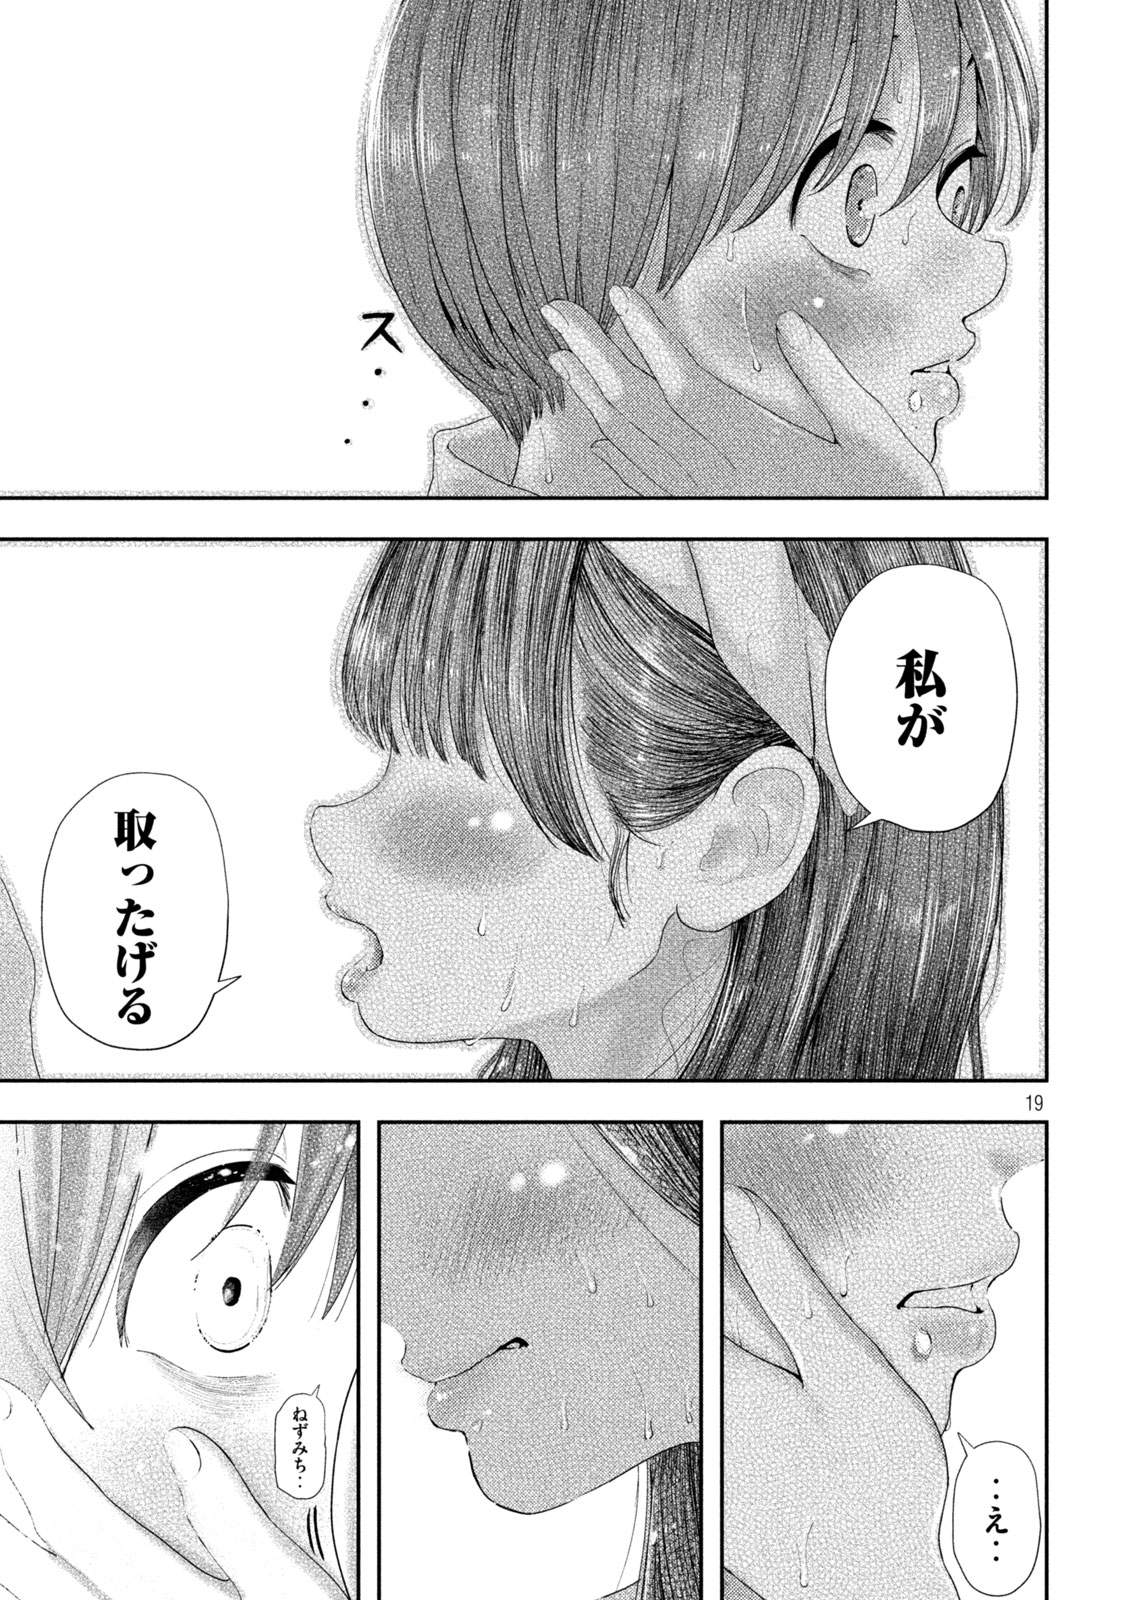 Nezumi no Koi - Chapter 10 - Page 19